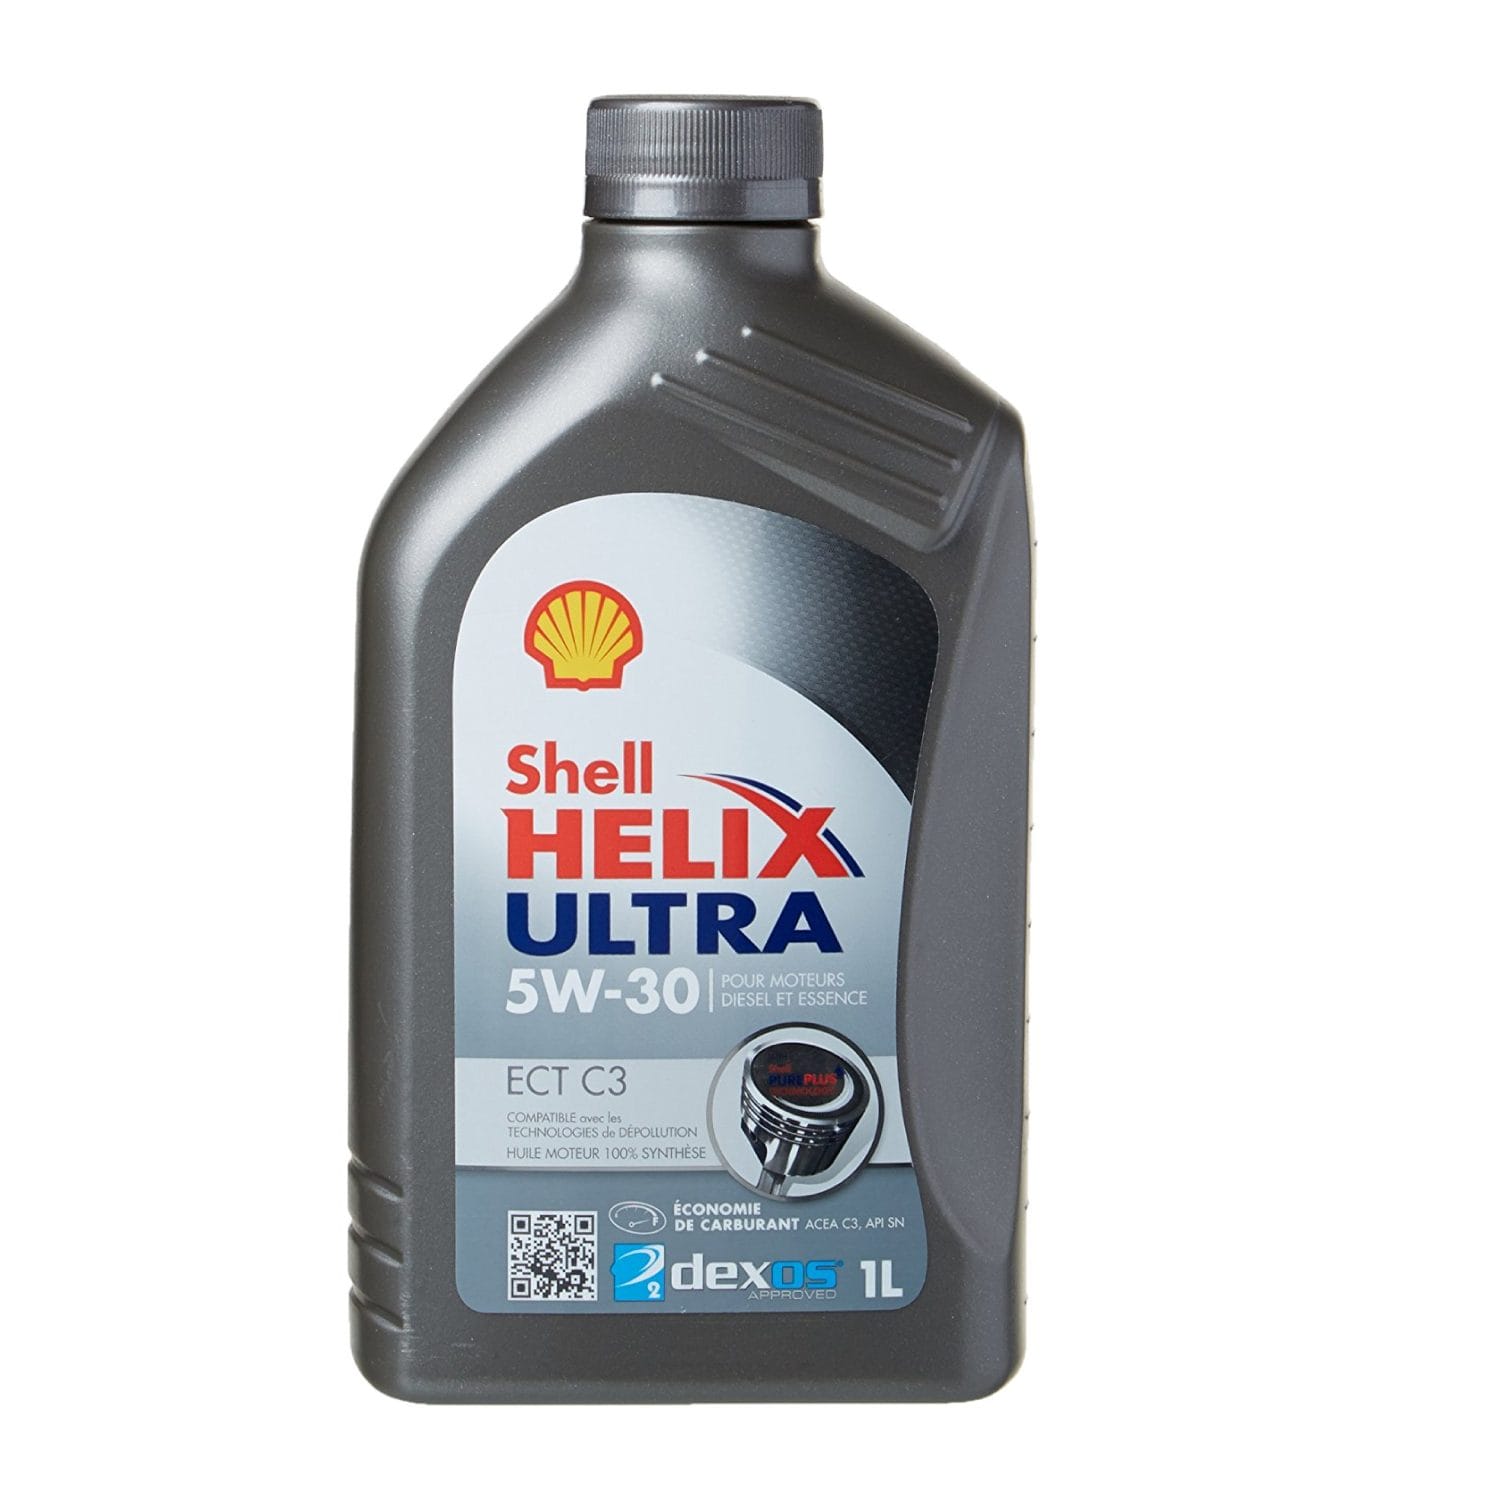 Motorolje fra Shell - Basol